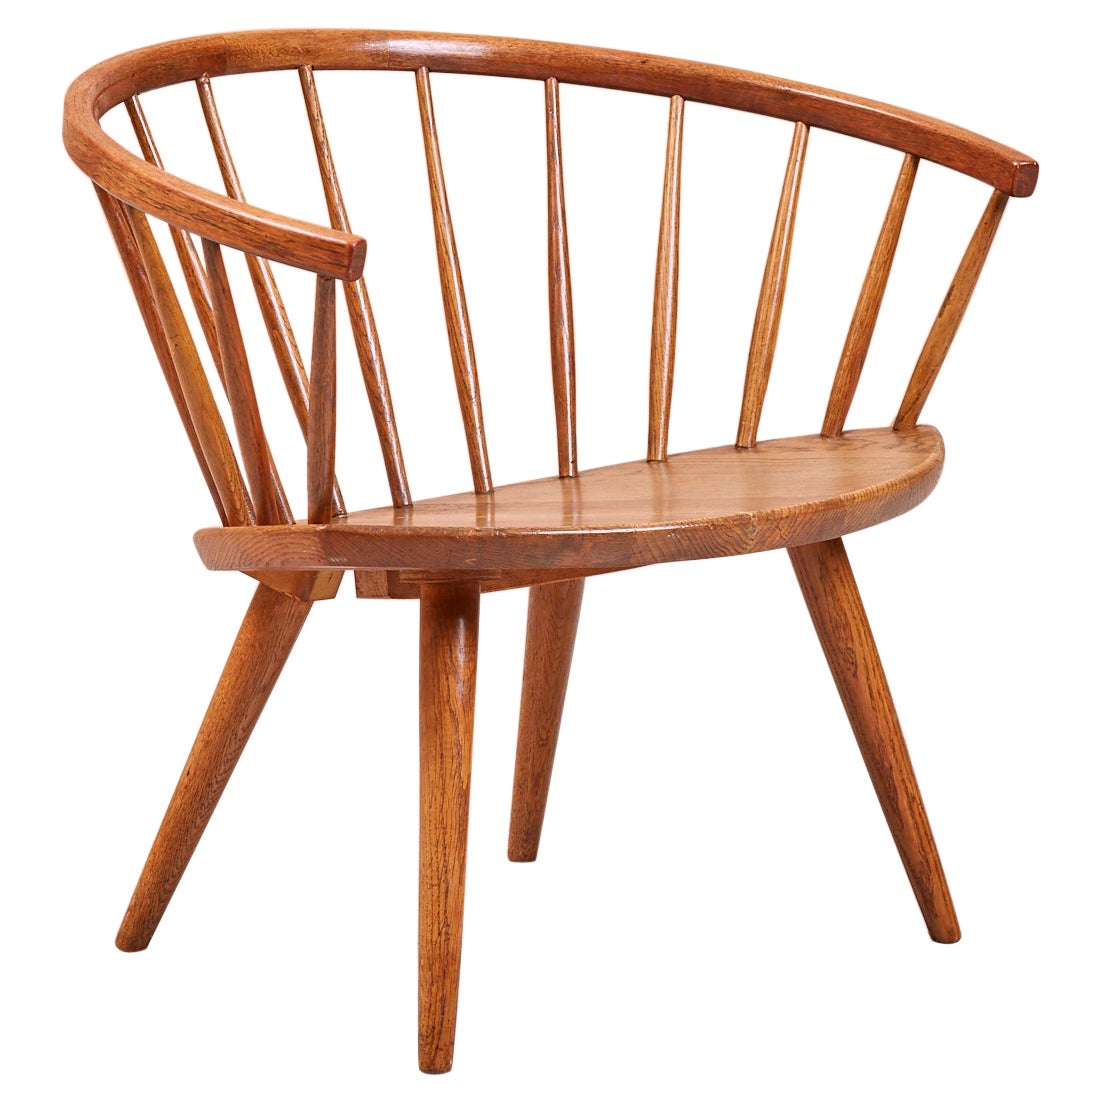 Arka Oak Chair by Yngve Ekström, by Ab Stolfabriks, Sweden, 1955